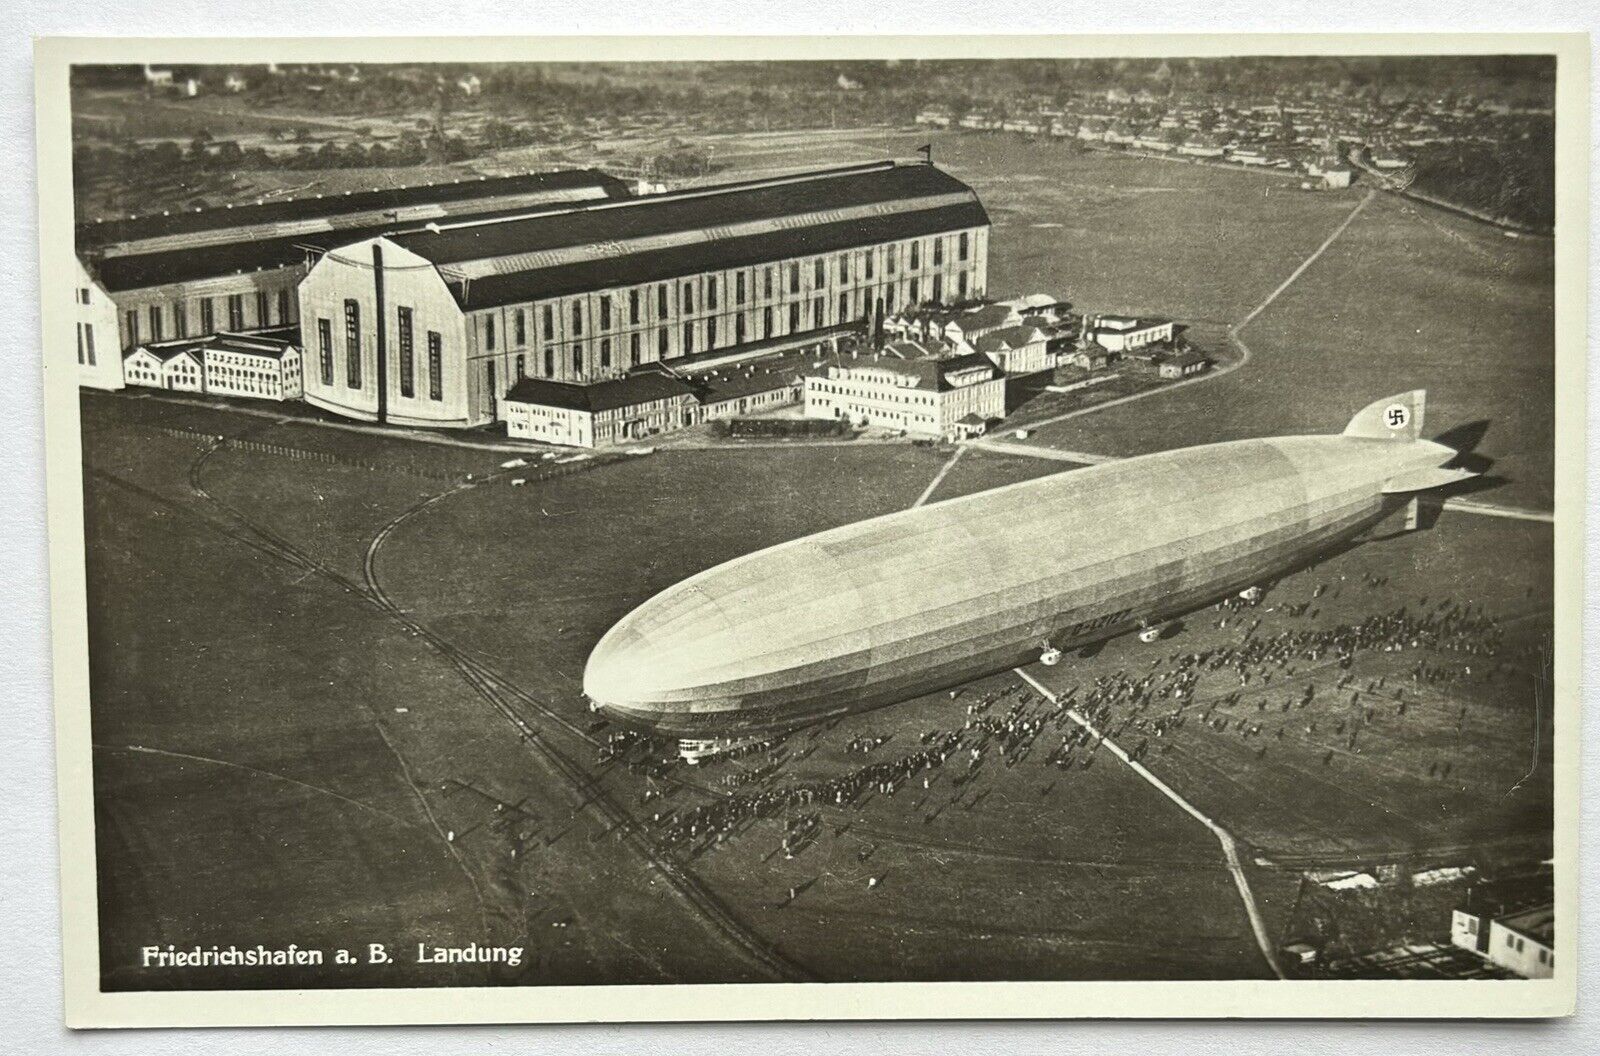 1930’s German Zeppelin Real Photo Postcard at Friedrichshafen Airport